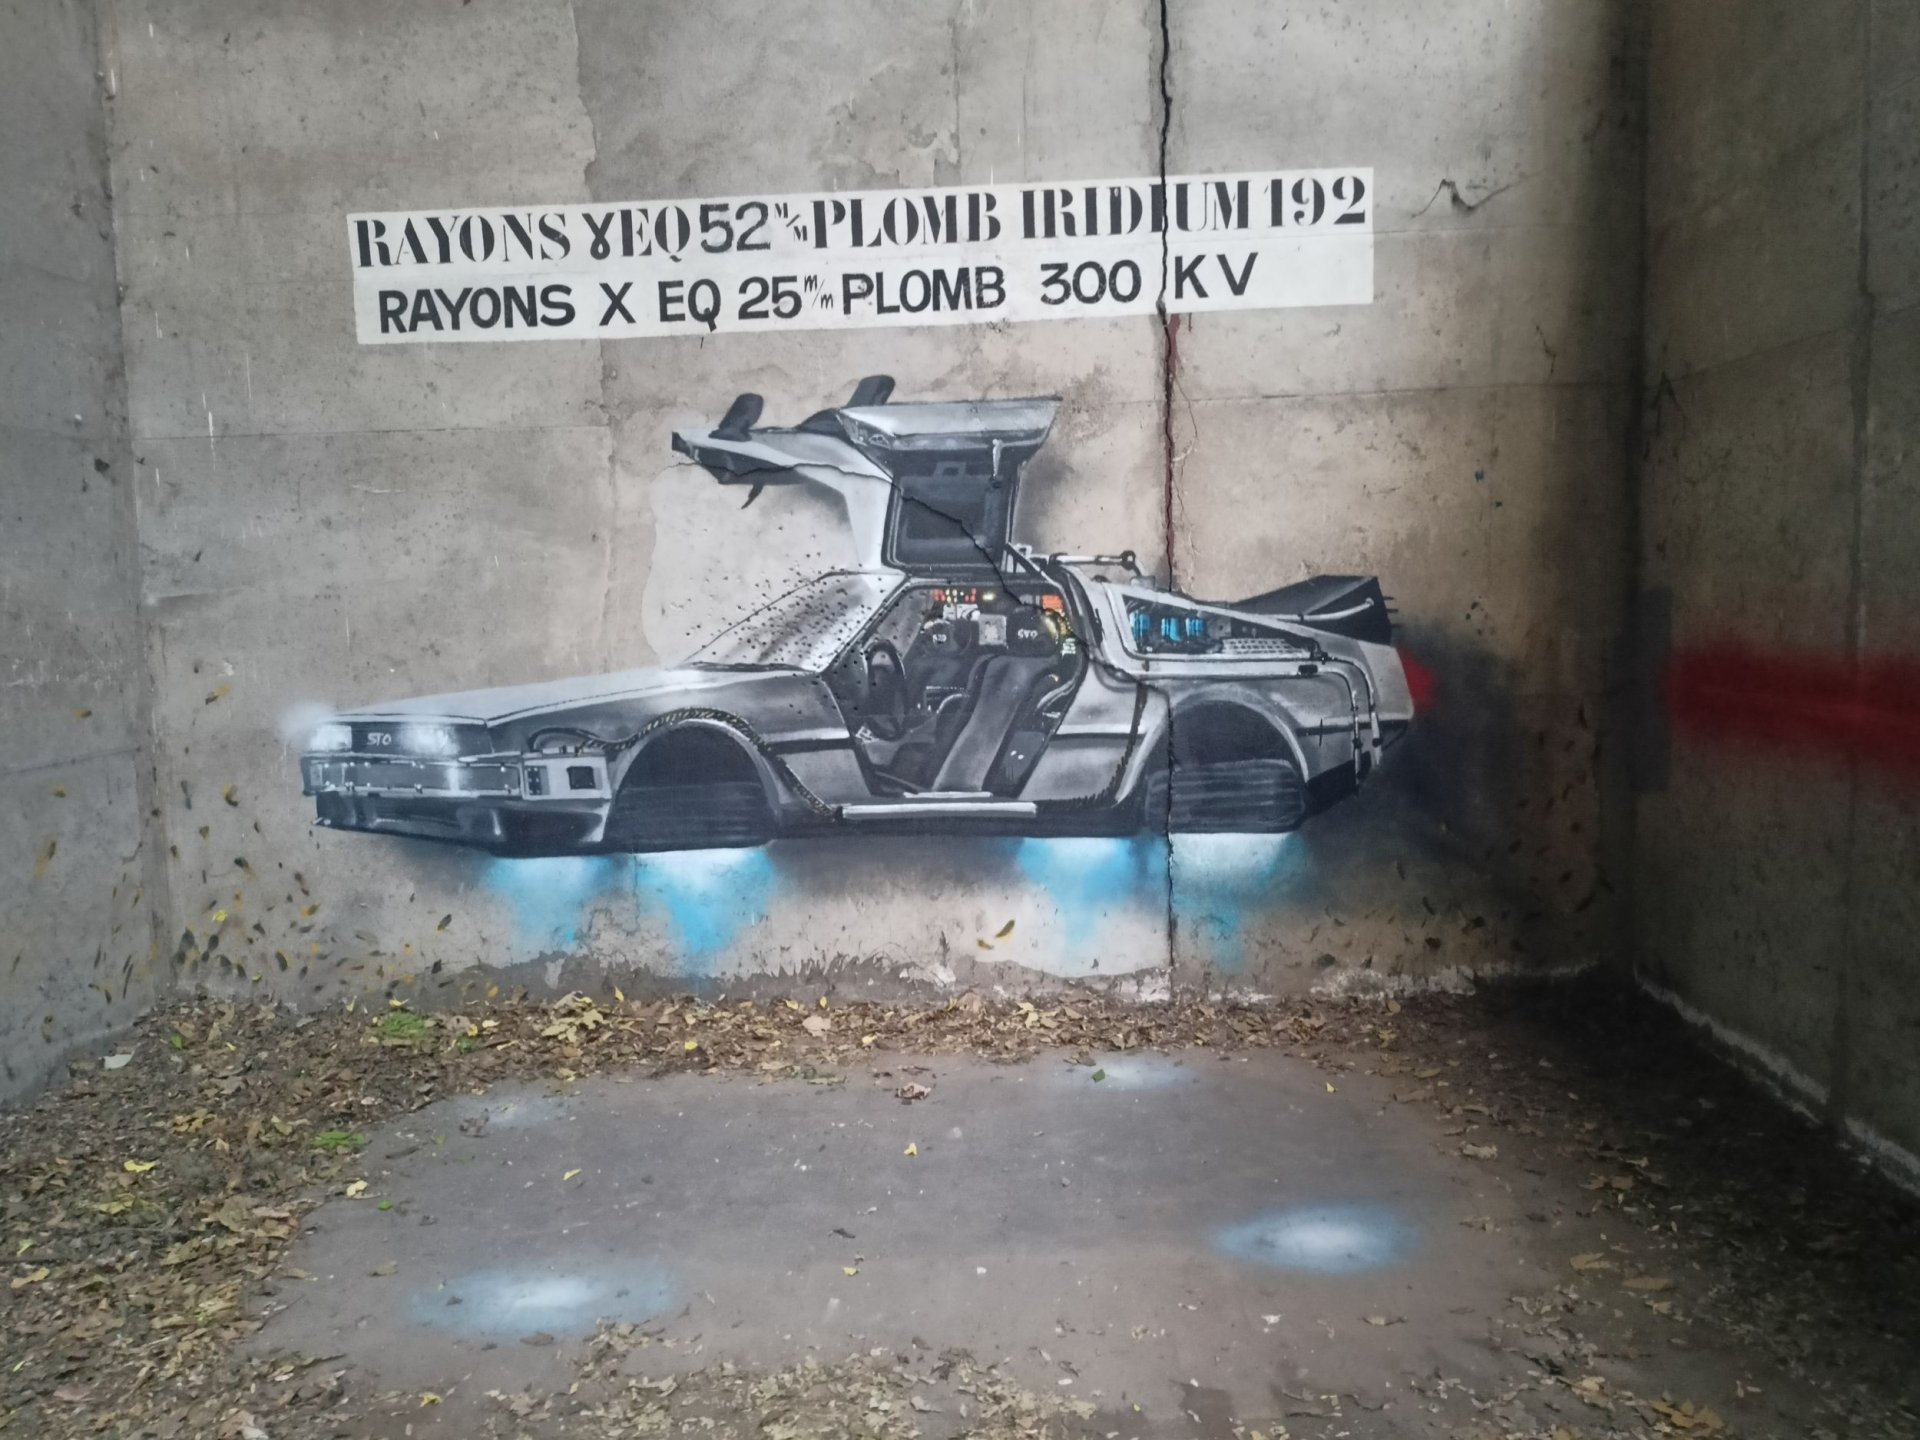  Babcockerie : street art et Urbex dans les anciennes usines Babcock & Wilcox à la Courneuve